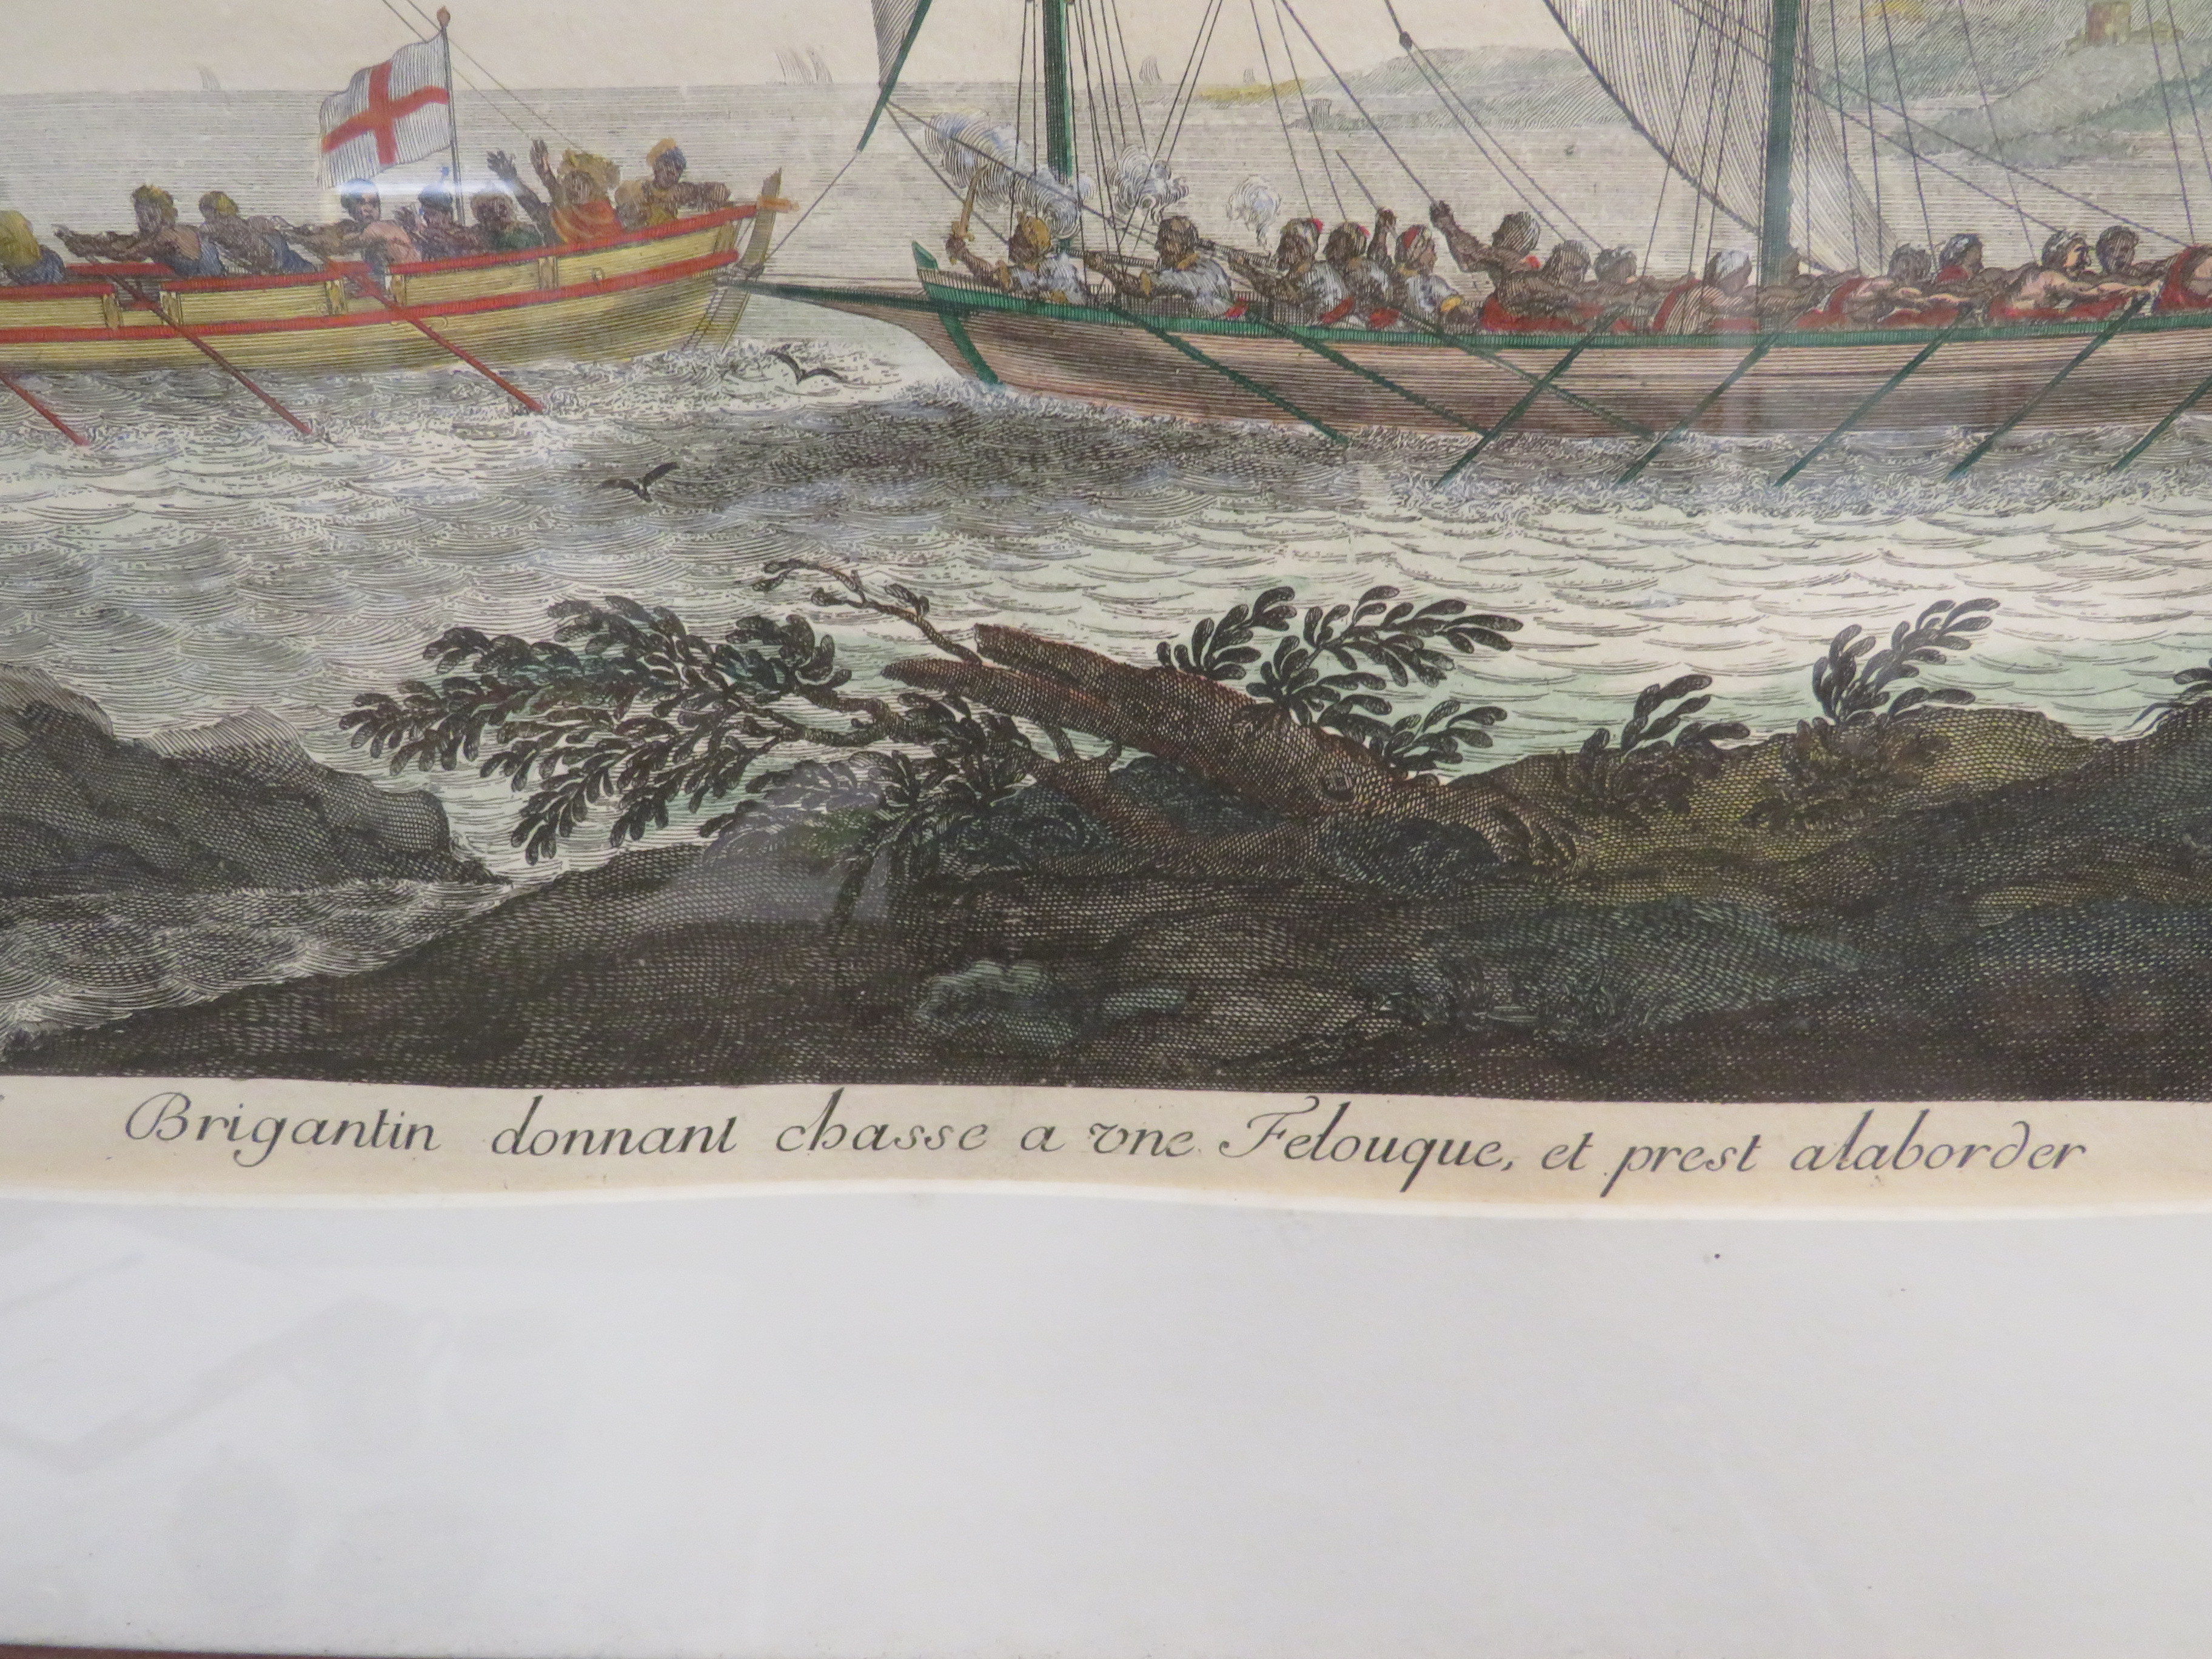 After Dne de Passebon, Brigantin donnant chasse a une Felouque, coloured engraving, 58cm x 44cm, F& - Image 3 of 3